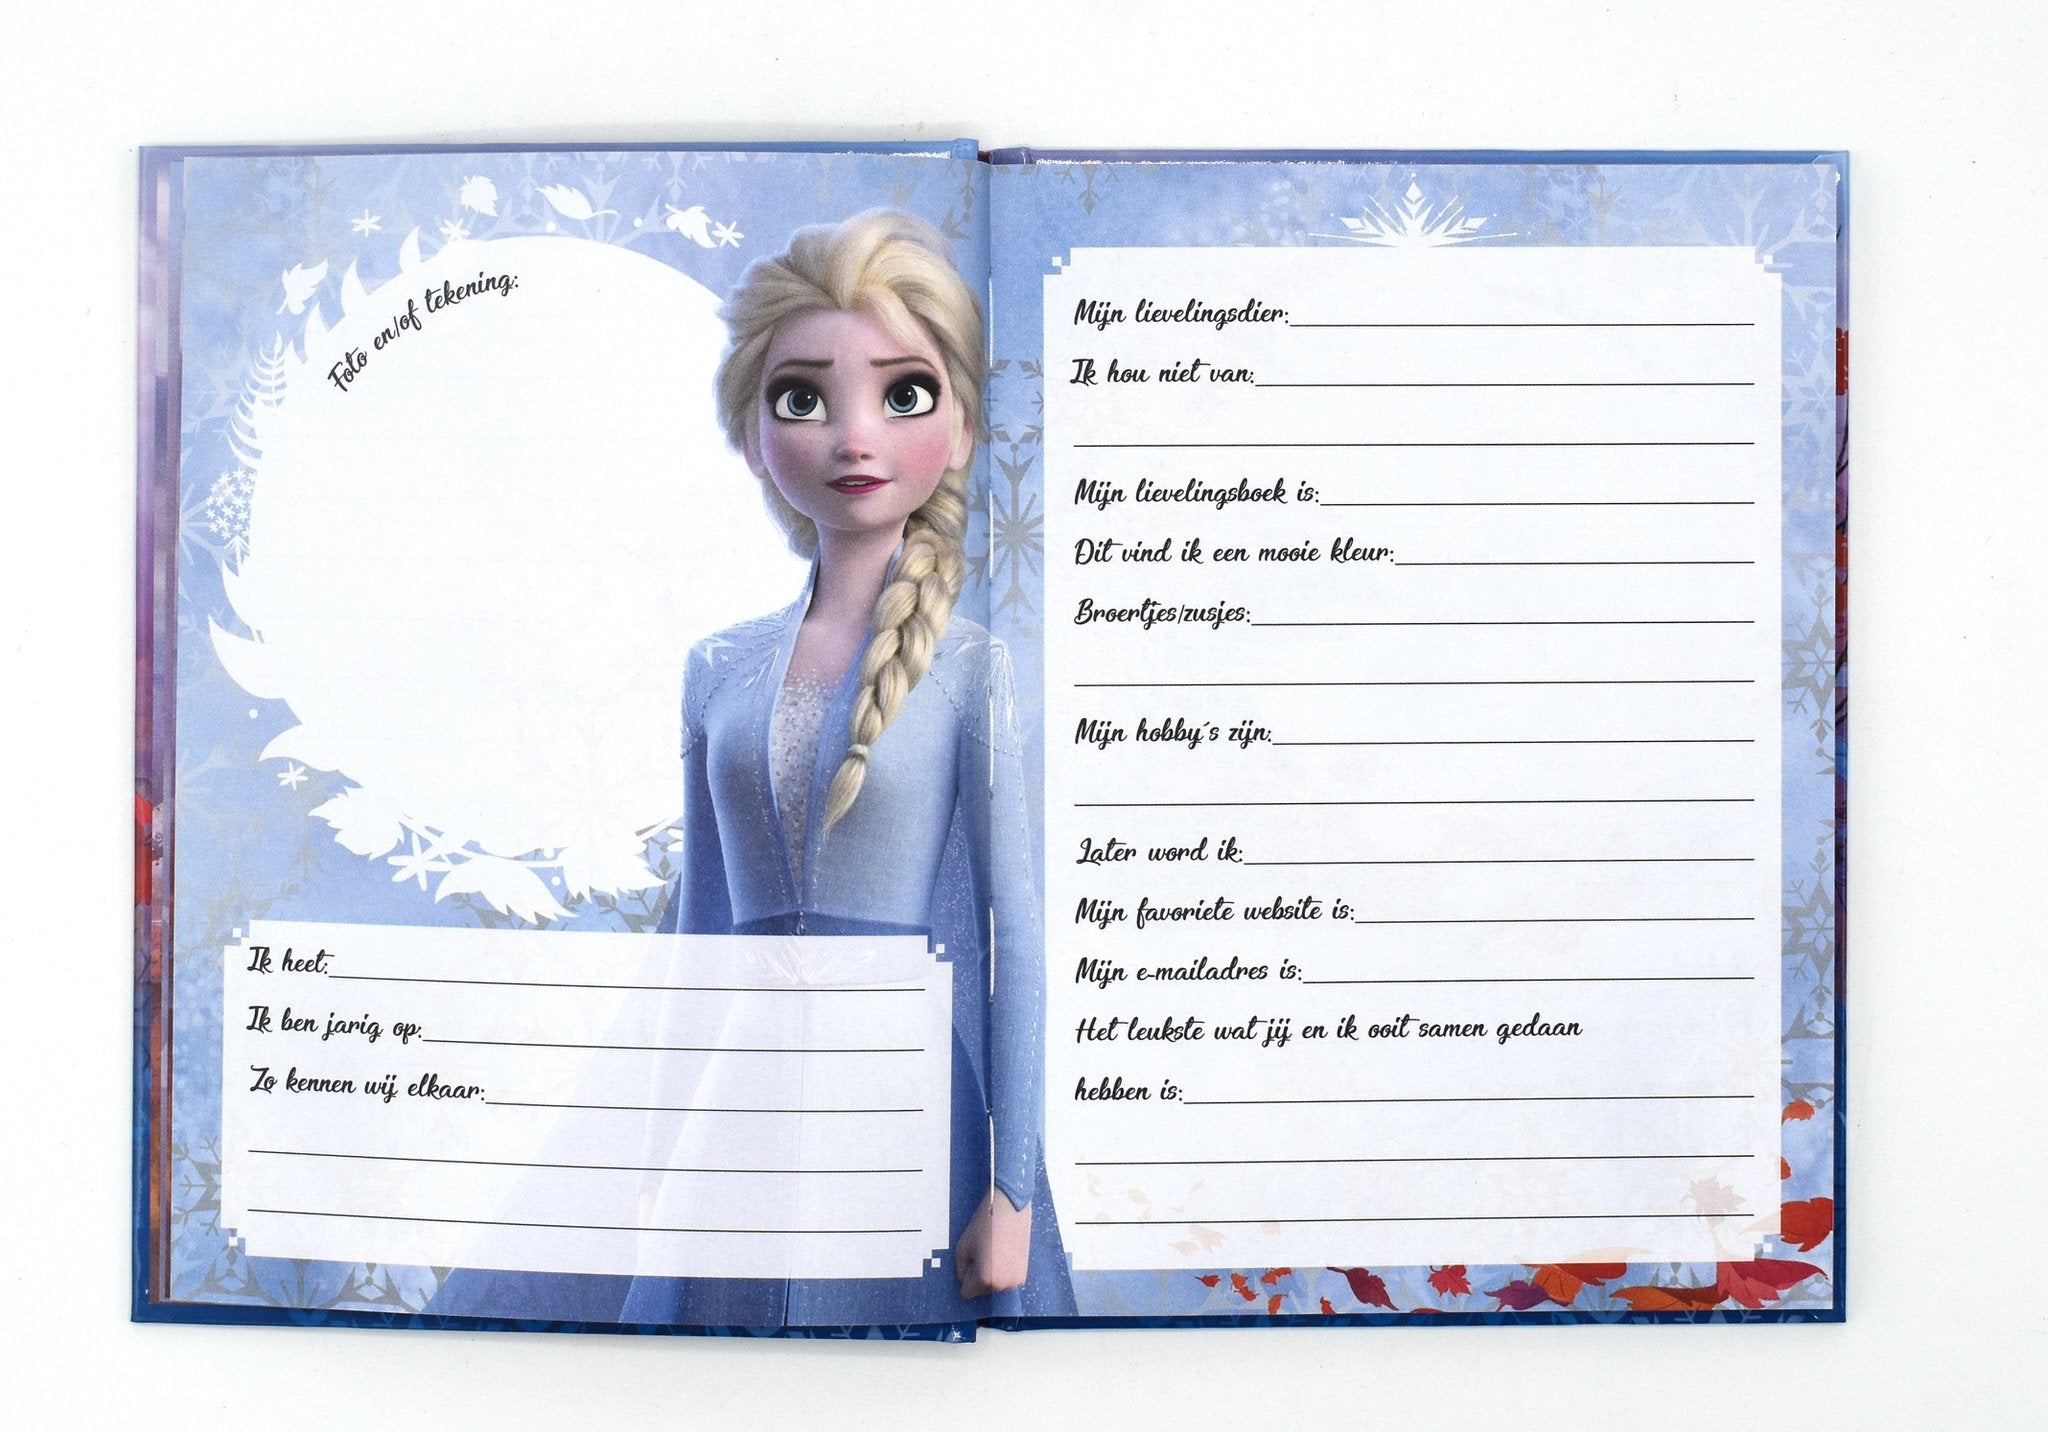 vriendenboek Frozen II